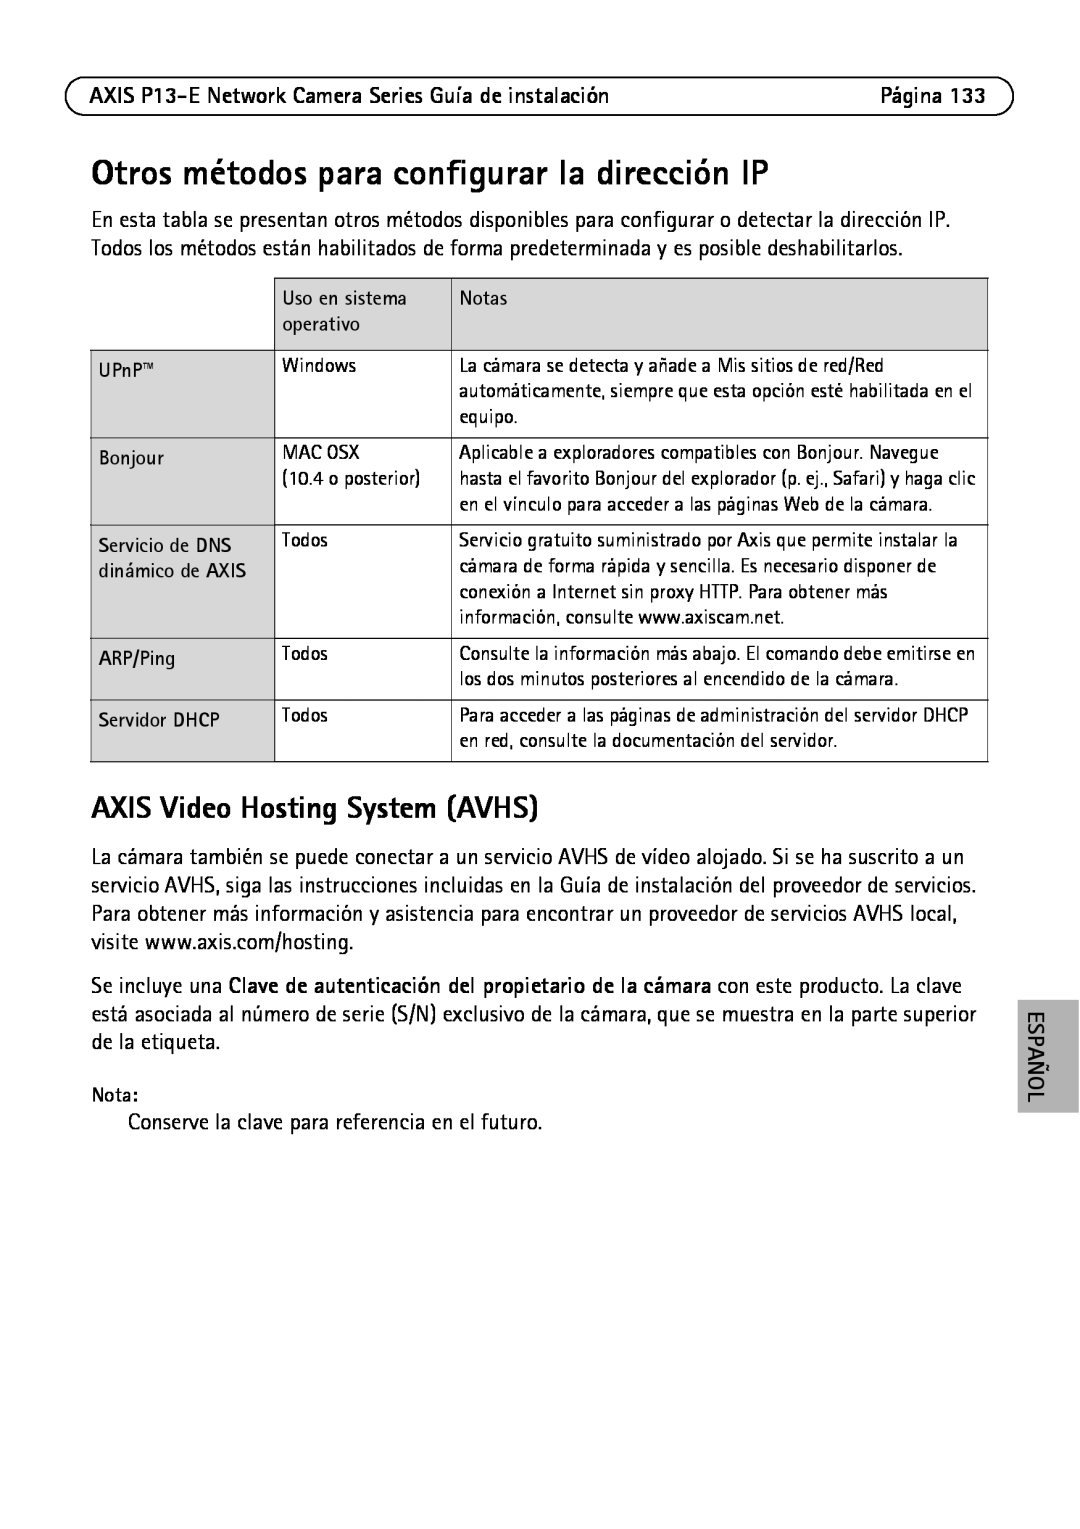 Axis Communications P1347-E, P1343-E, P13-E Otros métodos para configurar la dirección IP, AXIS Video Hosting System AVHS 